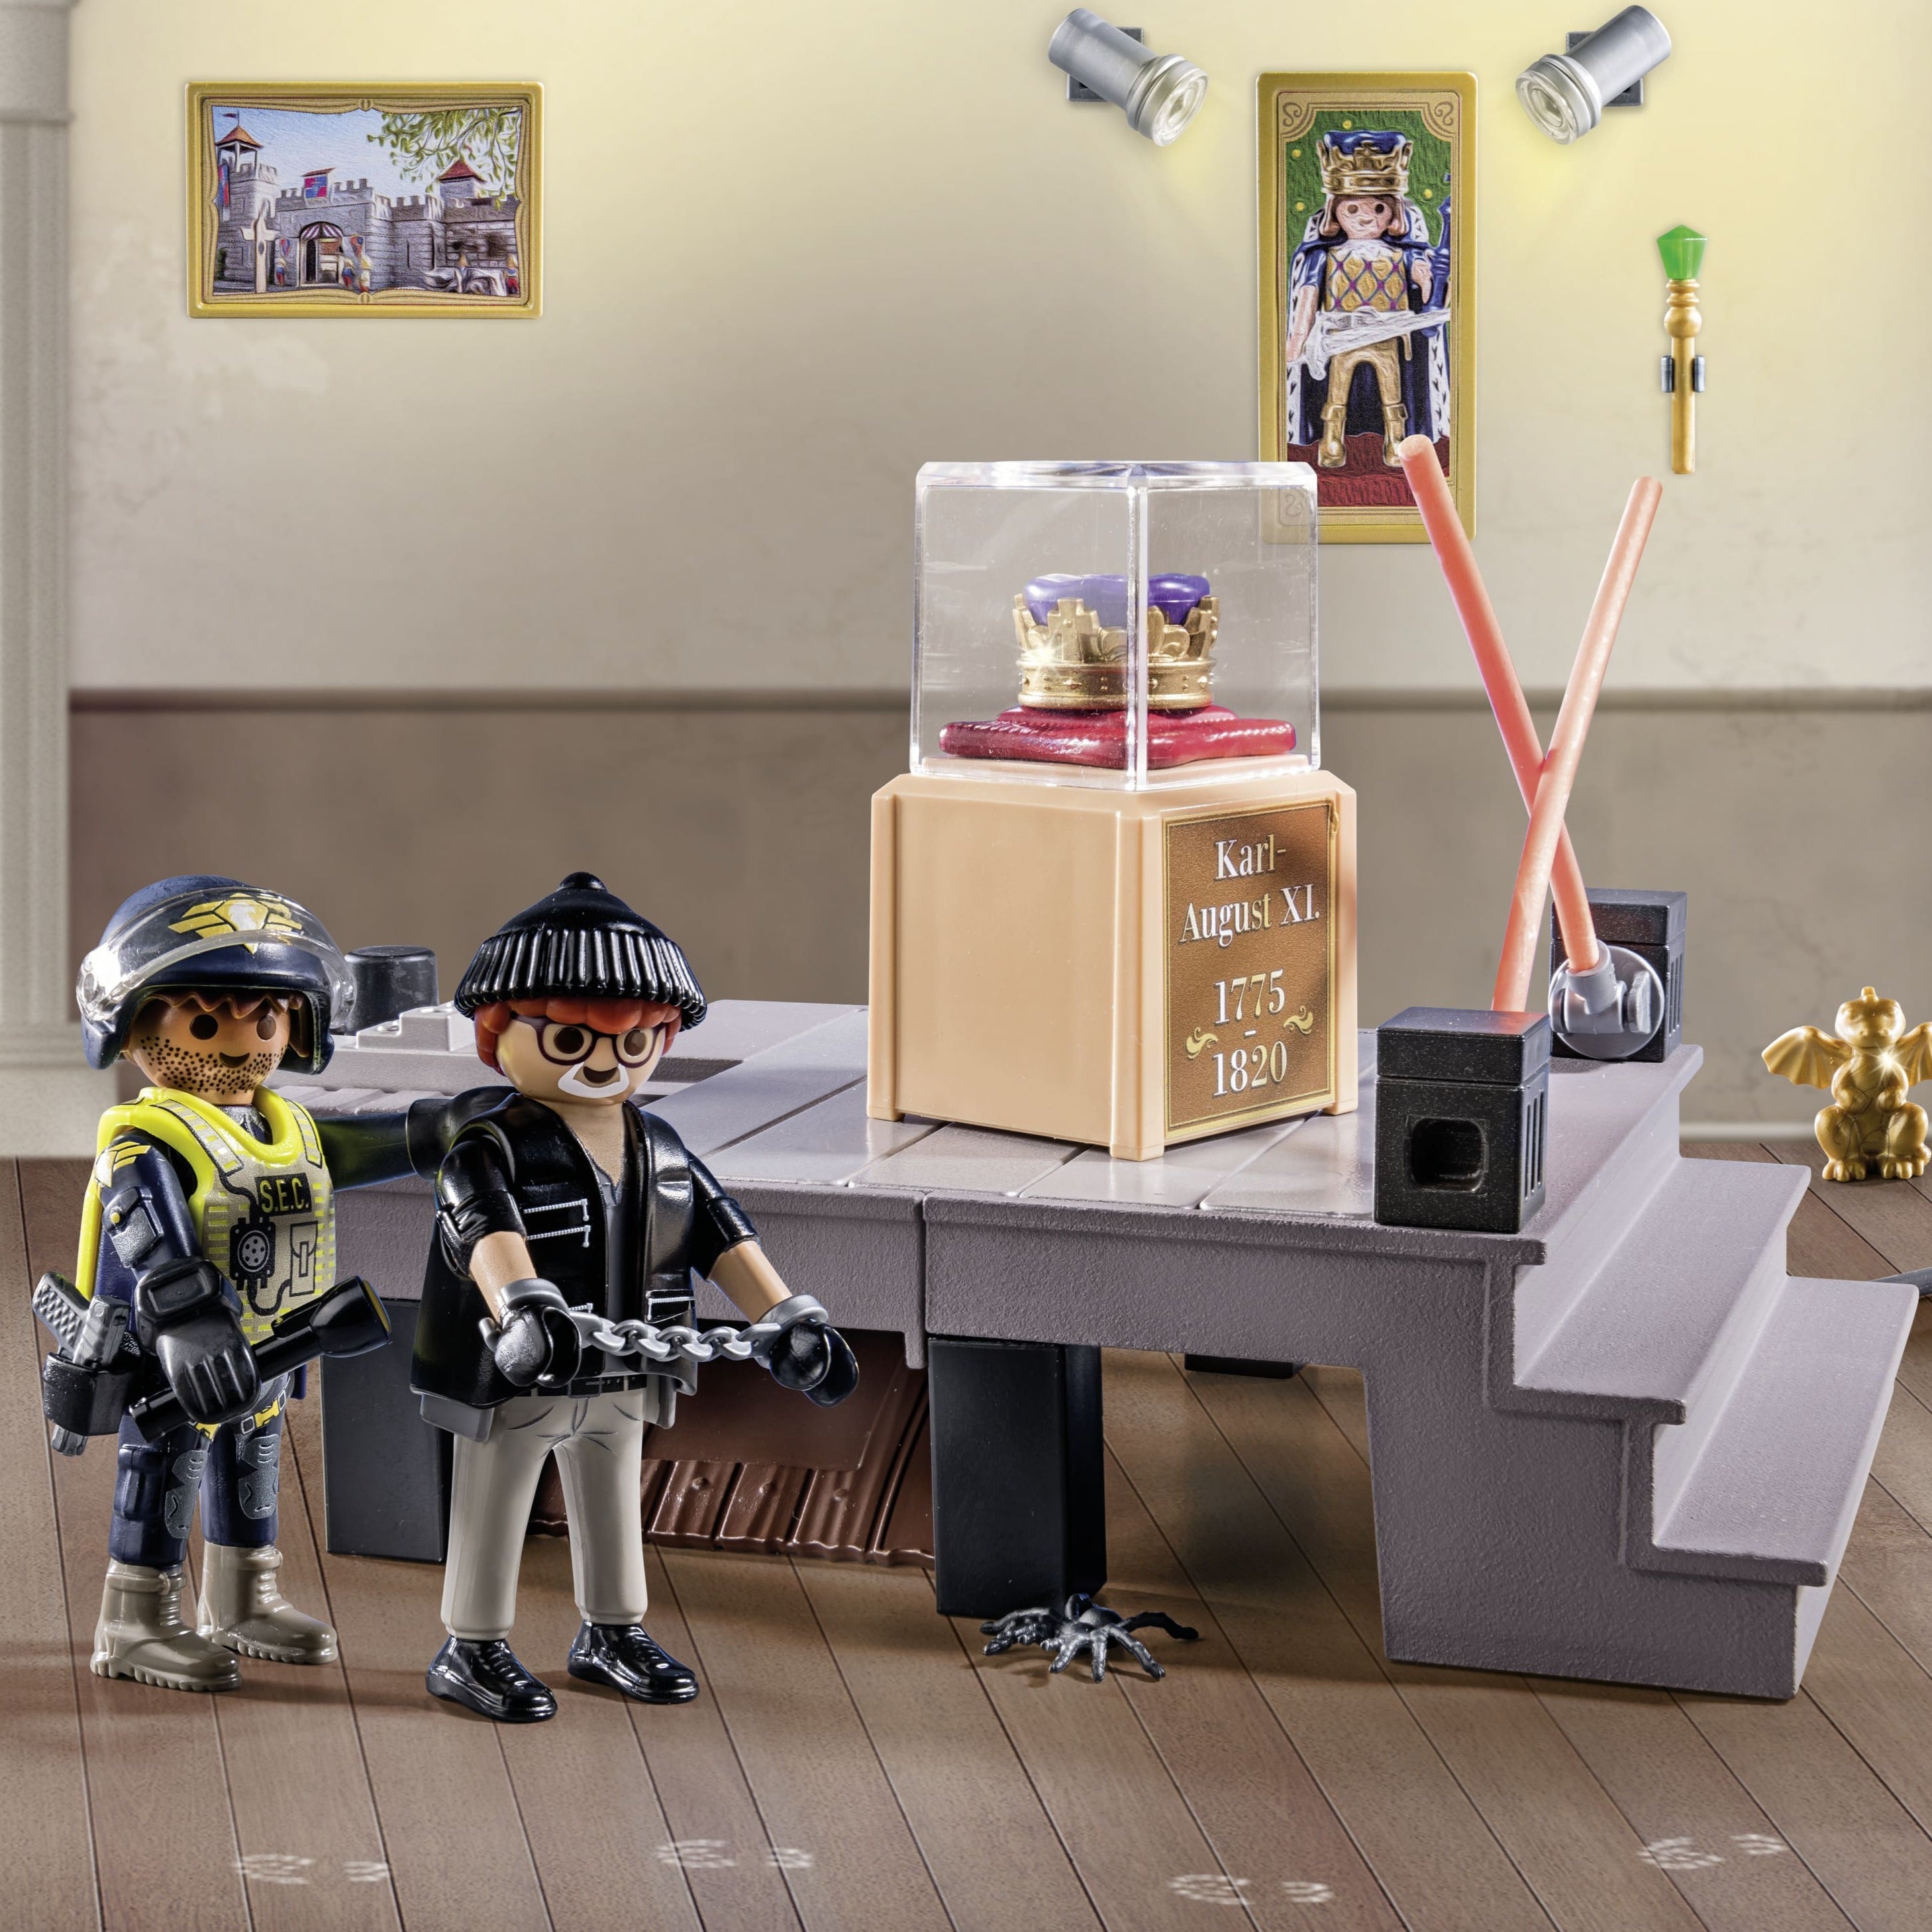 Playmobil: Police du calendrier de l'Avent. Vol dans le musée Noël